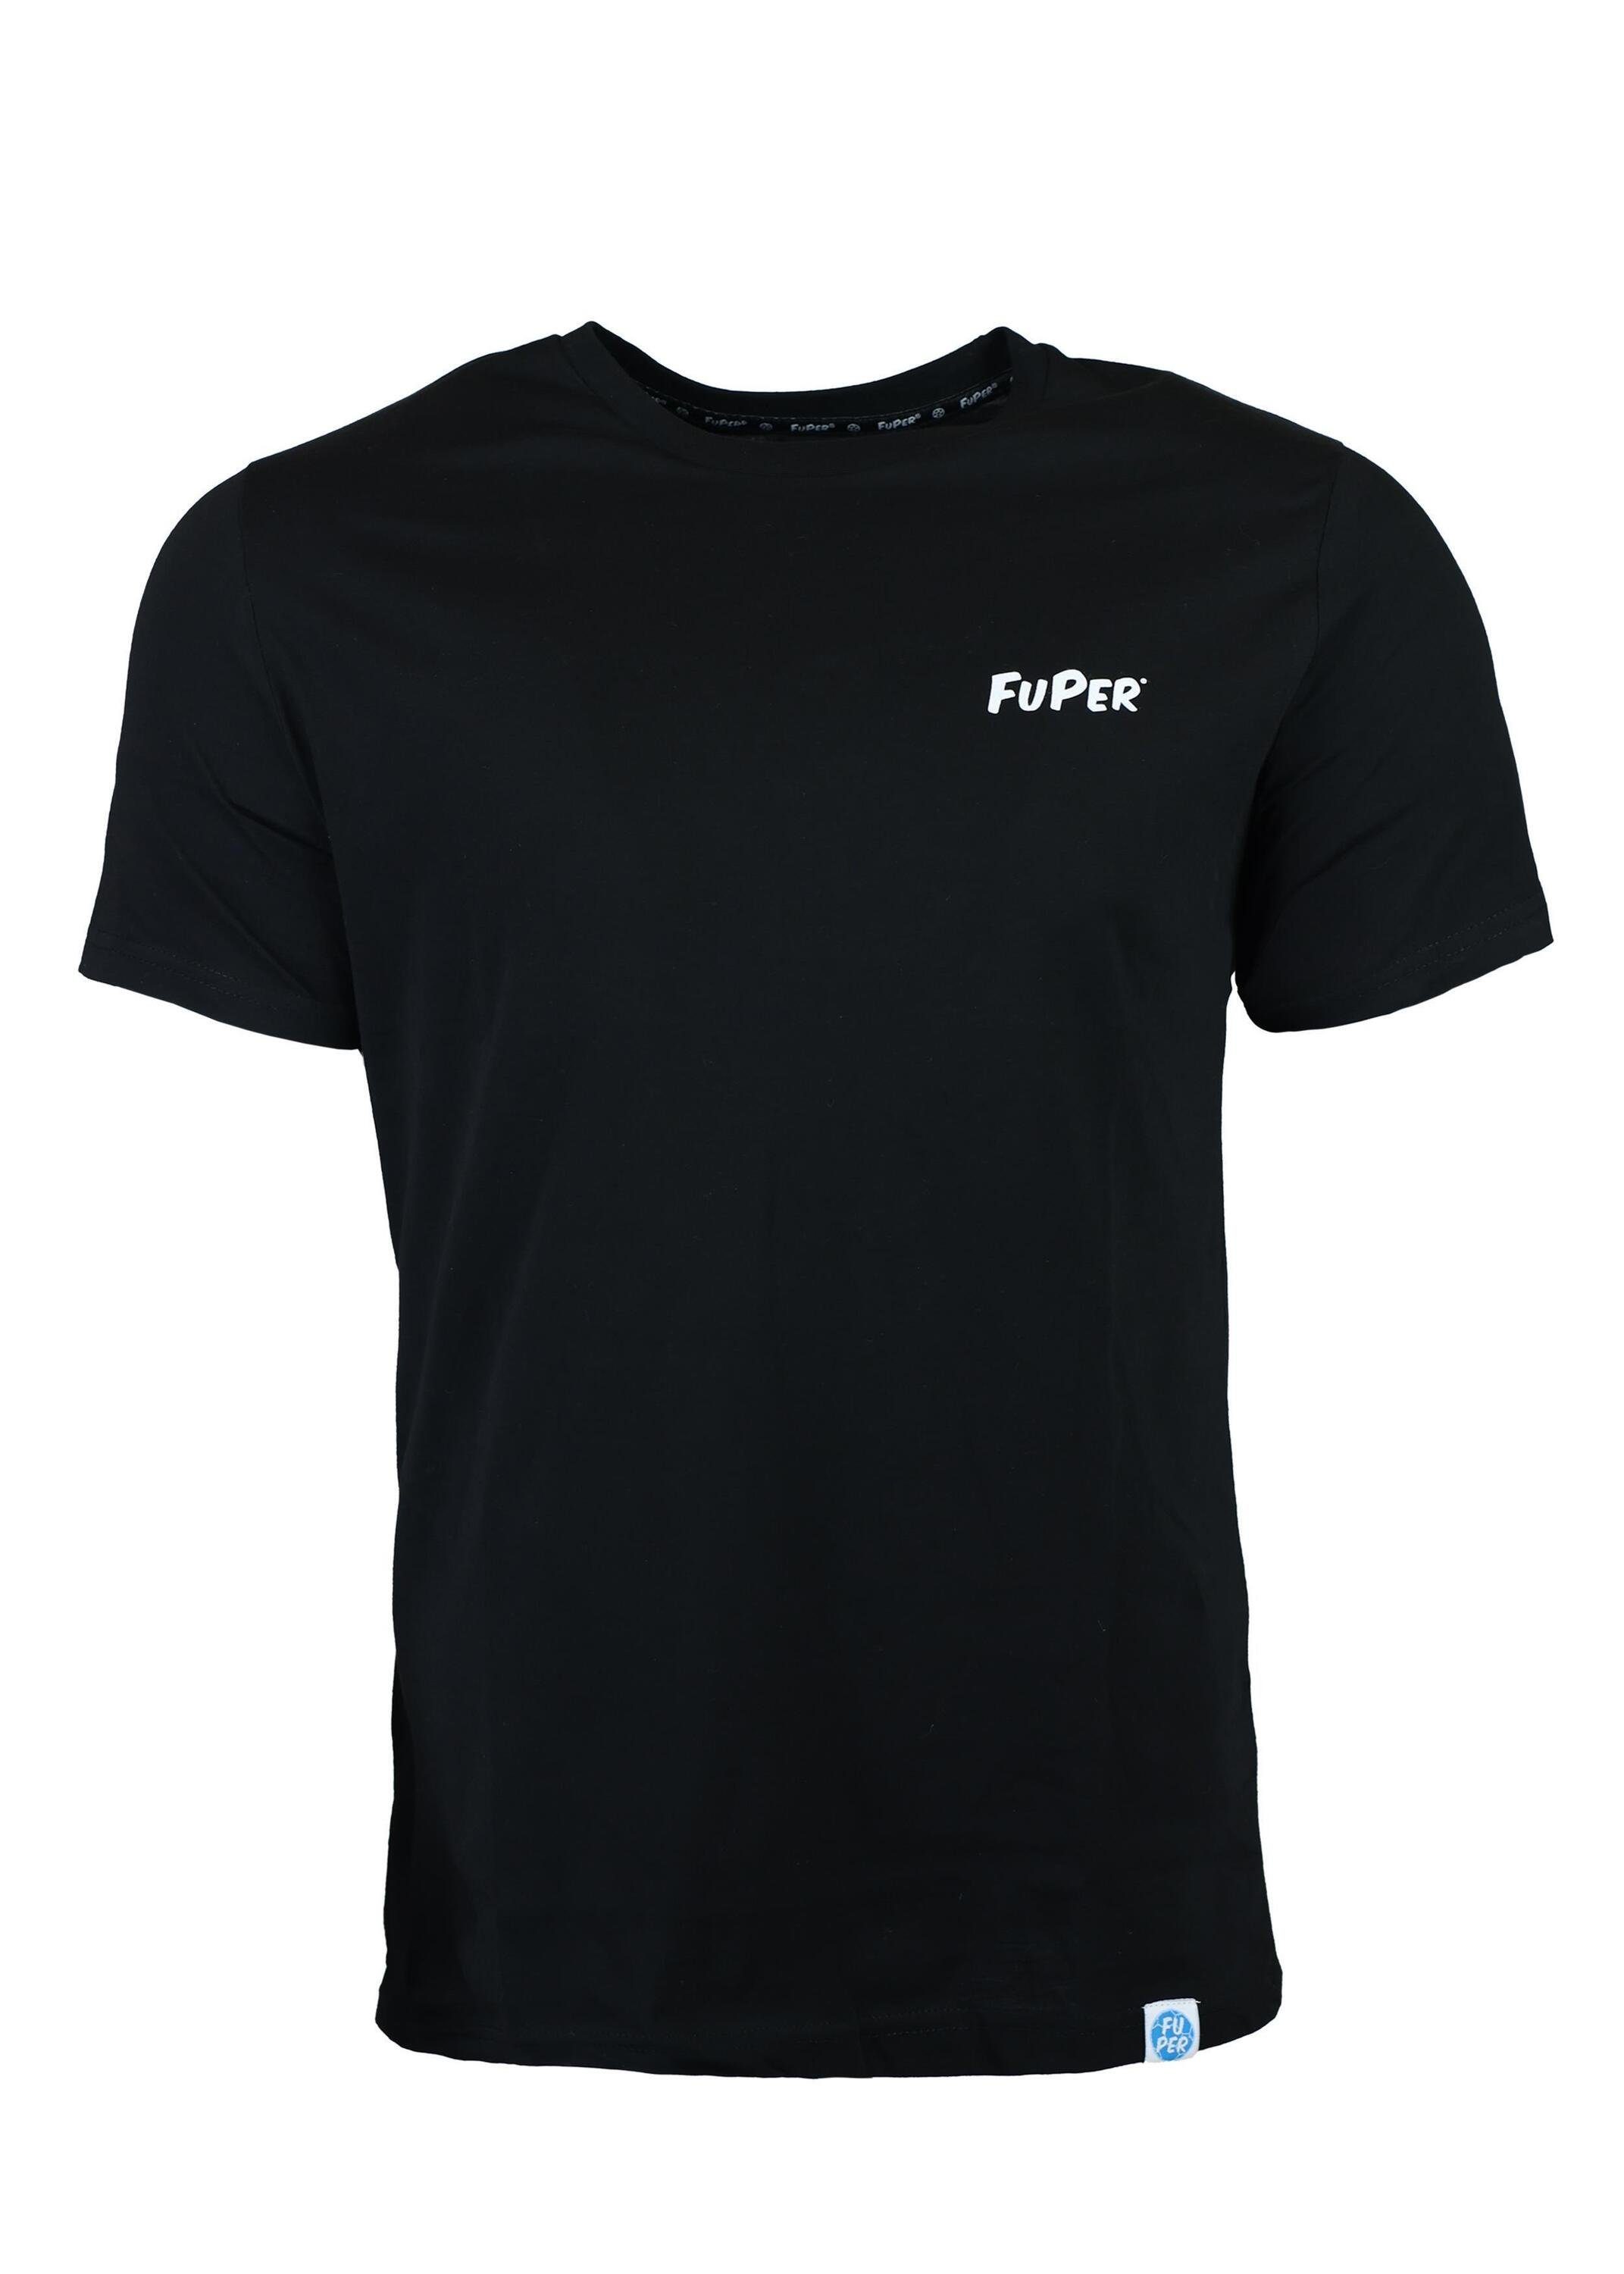 FuPer T-Shirt Luis für Kinder, aus Baumwolle, Fußball, Jugend Black